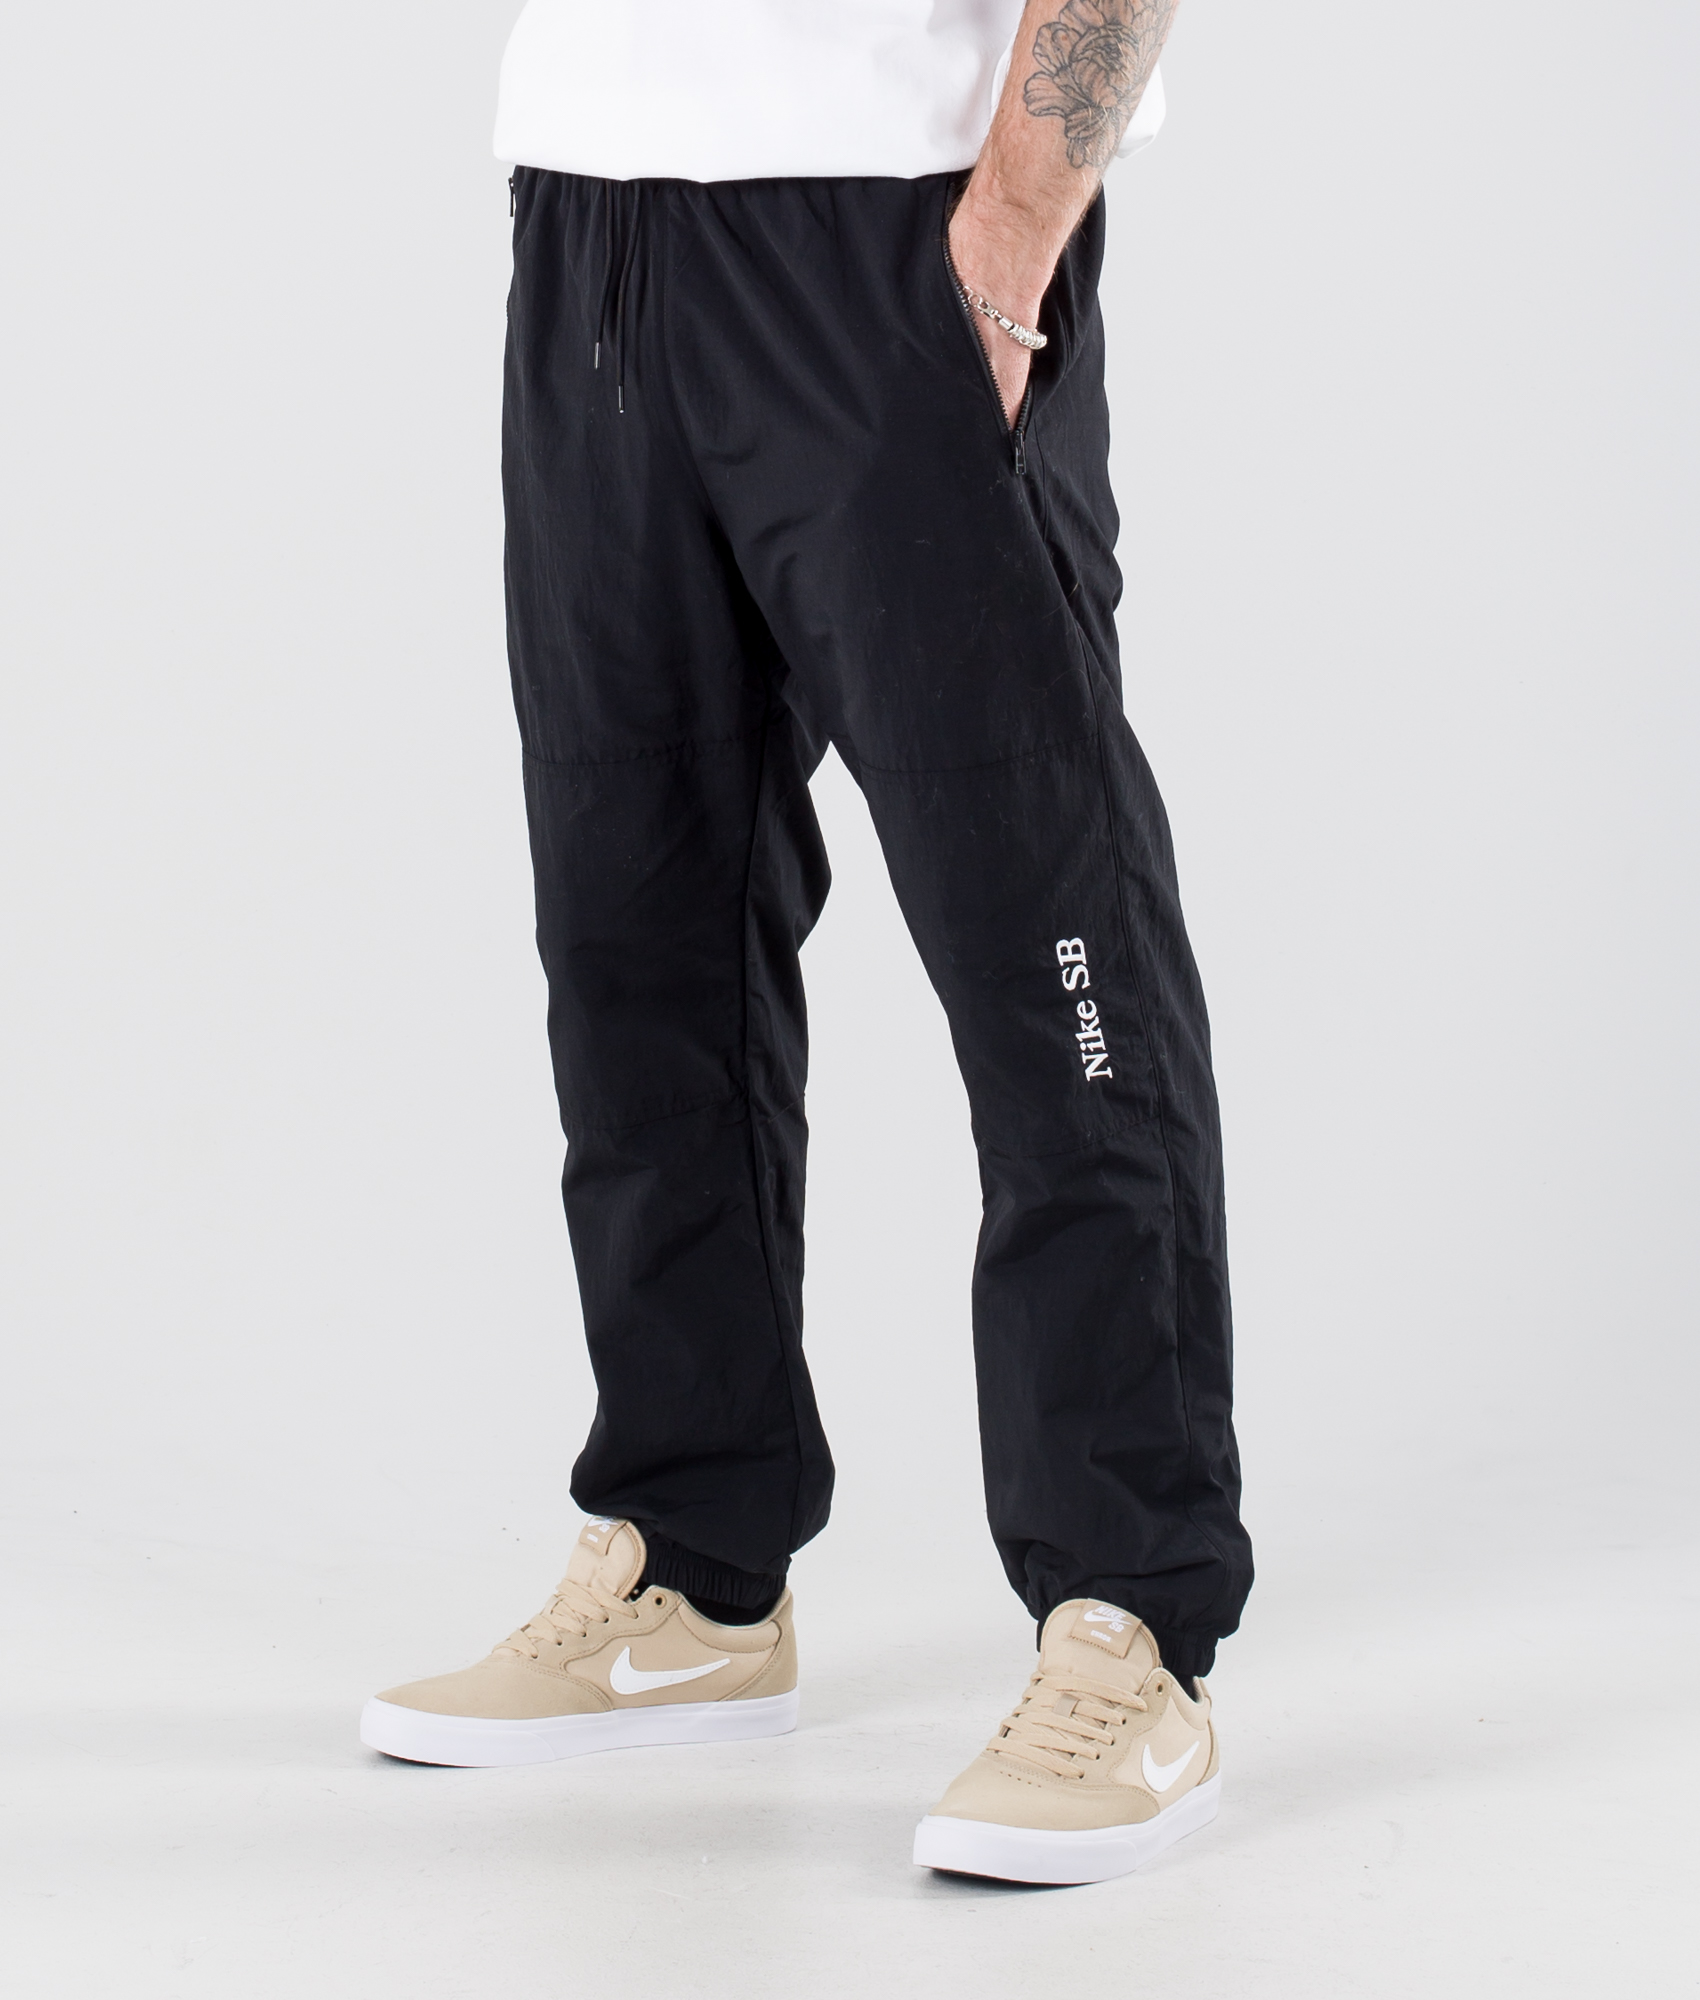 Nike SB Y2K Gfx Pantalones Black/White - Ridestore.com